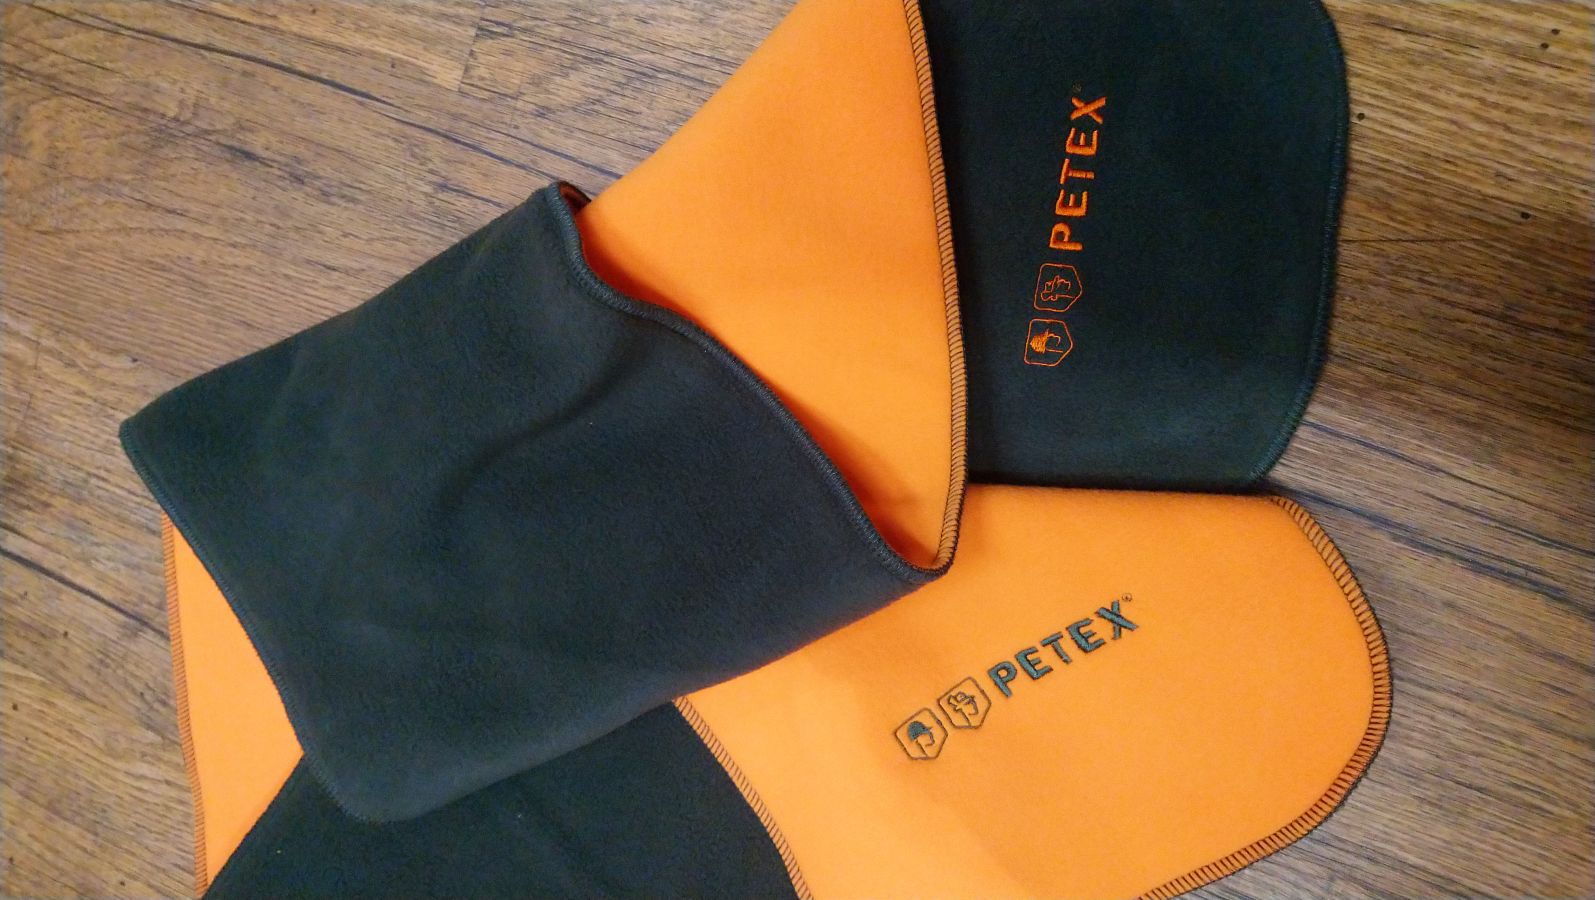 Šála myslivecká LOVEC fleece zeleno/oranžová s výšivkou Petex  - Obrázek